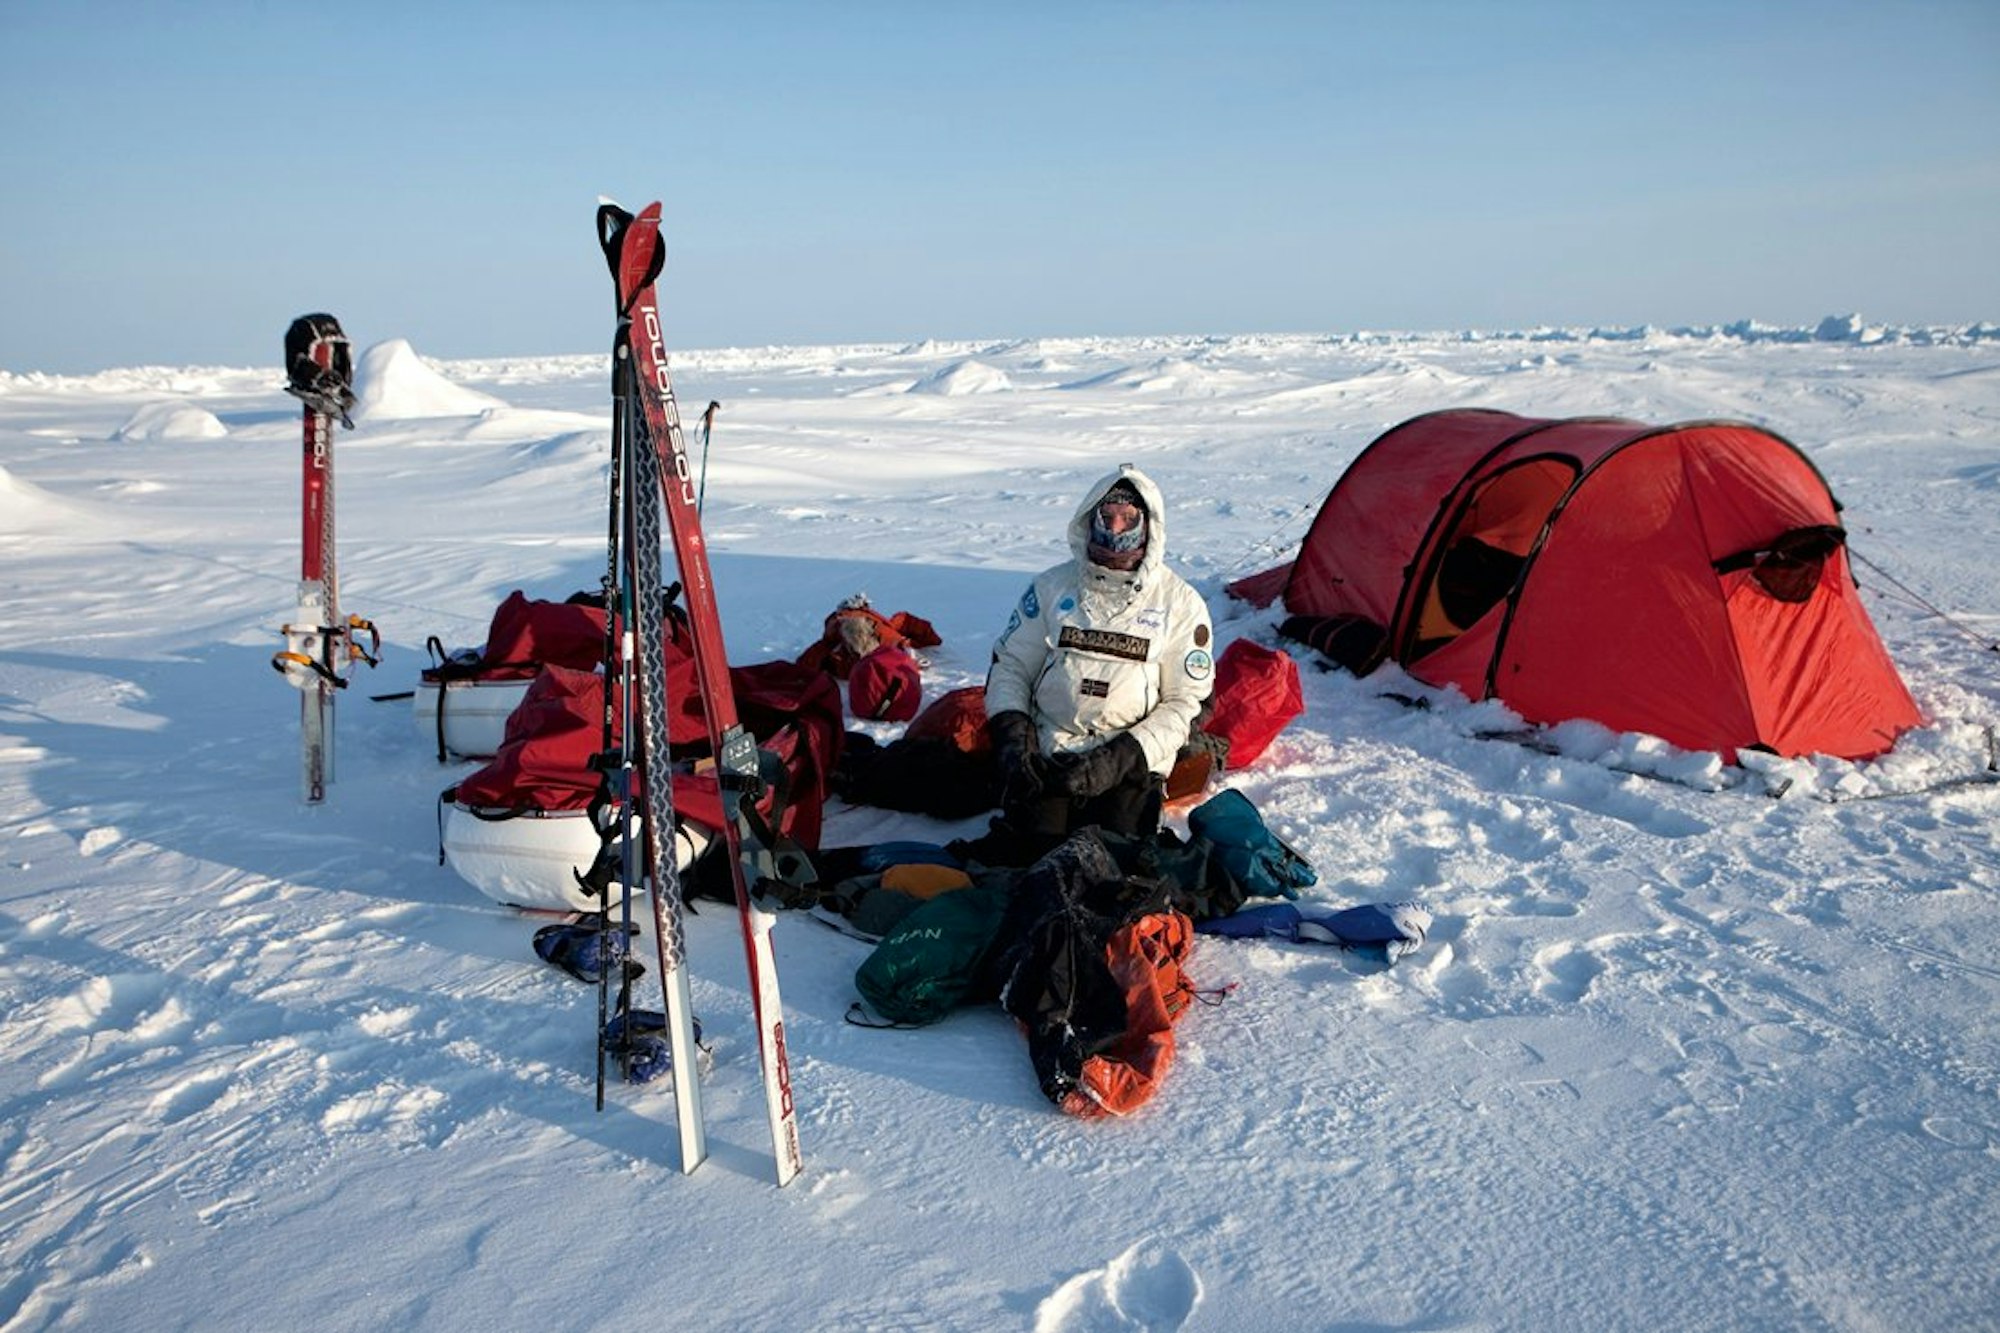 Auf Skiern fortbewegen, im Zelt schlafen: Sebastian Copeland inmitten der Ausrüstung in der Arktis